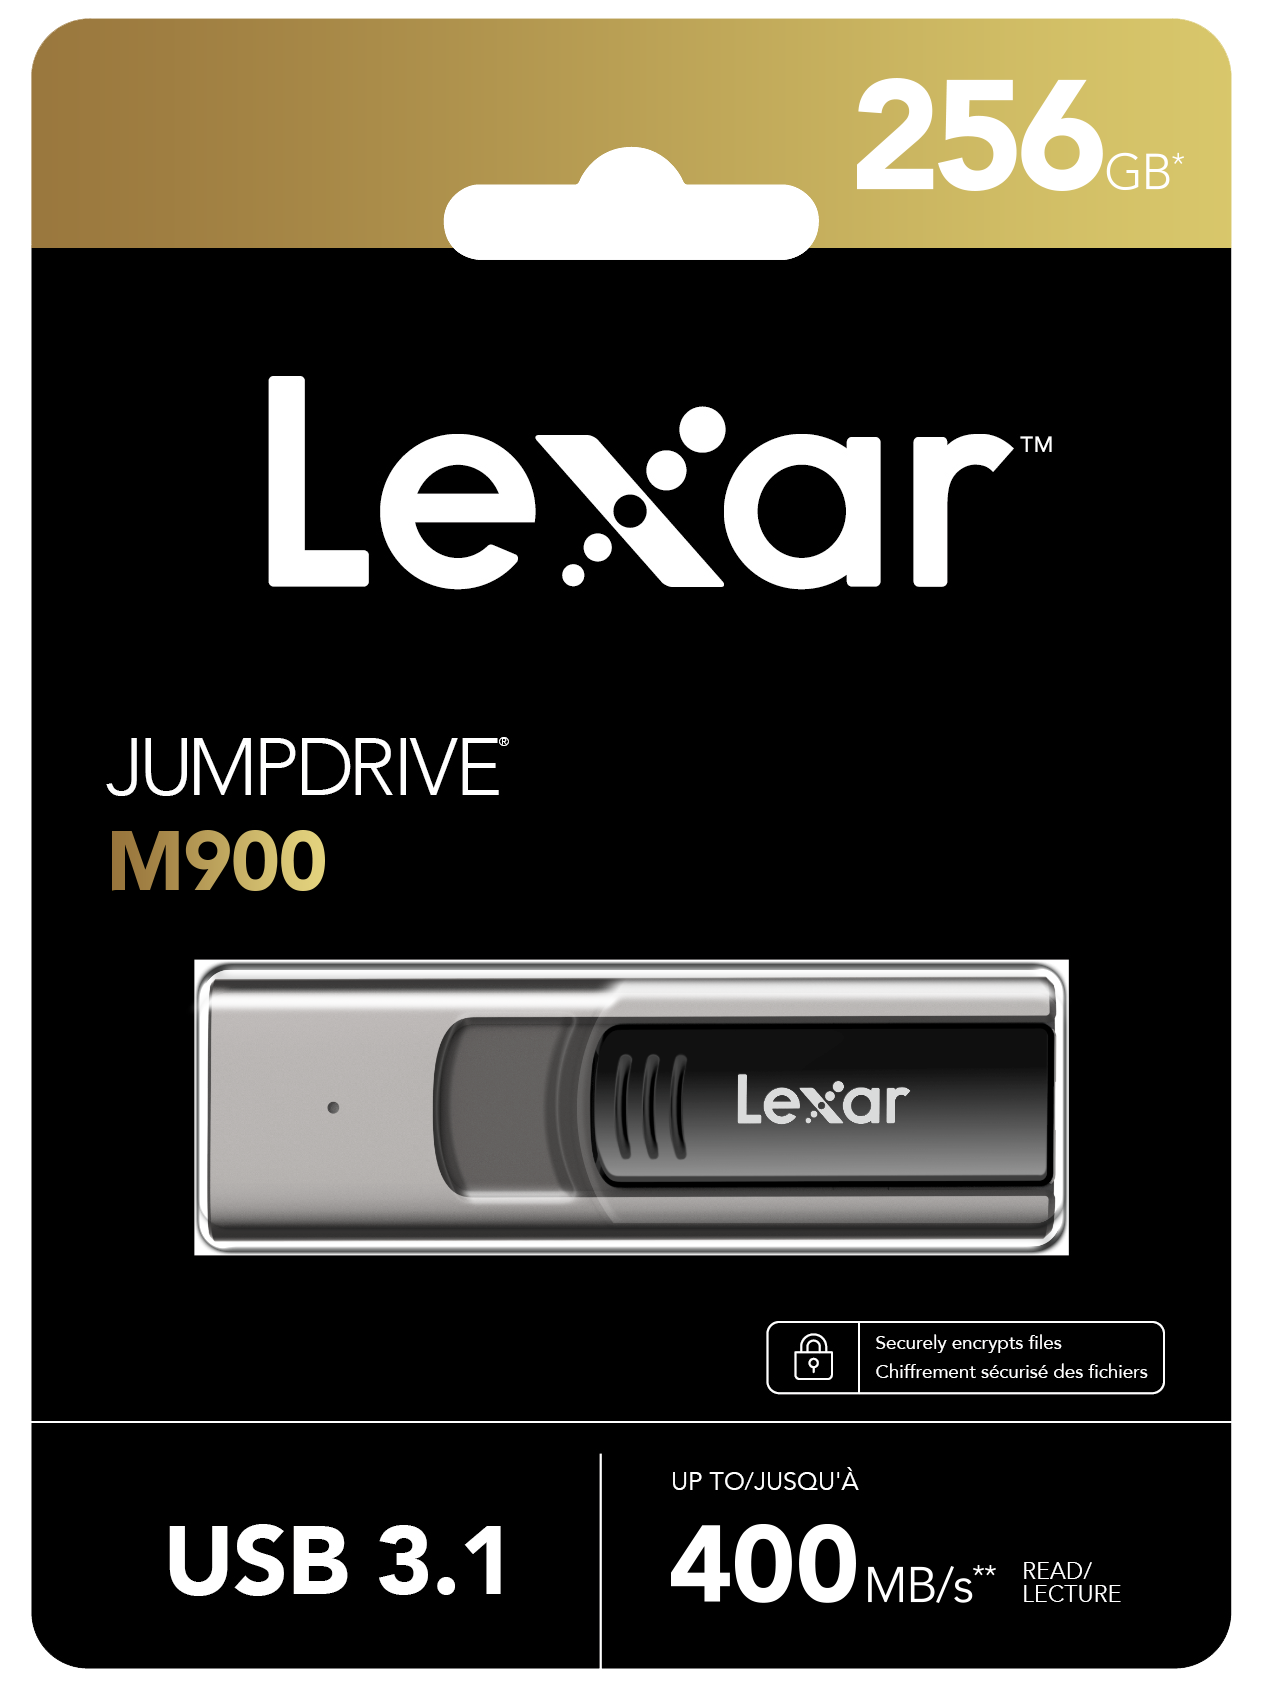 USB Lexar Jumpdrive M900 Flash Drive 128GB/ 256GB , chuẩn 3.1 , tốc độ đọc 400MB/s, tương thích PC/ MAC - Hàng chính hãng